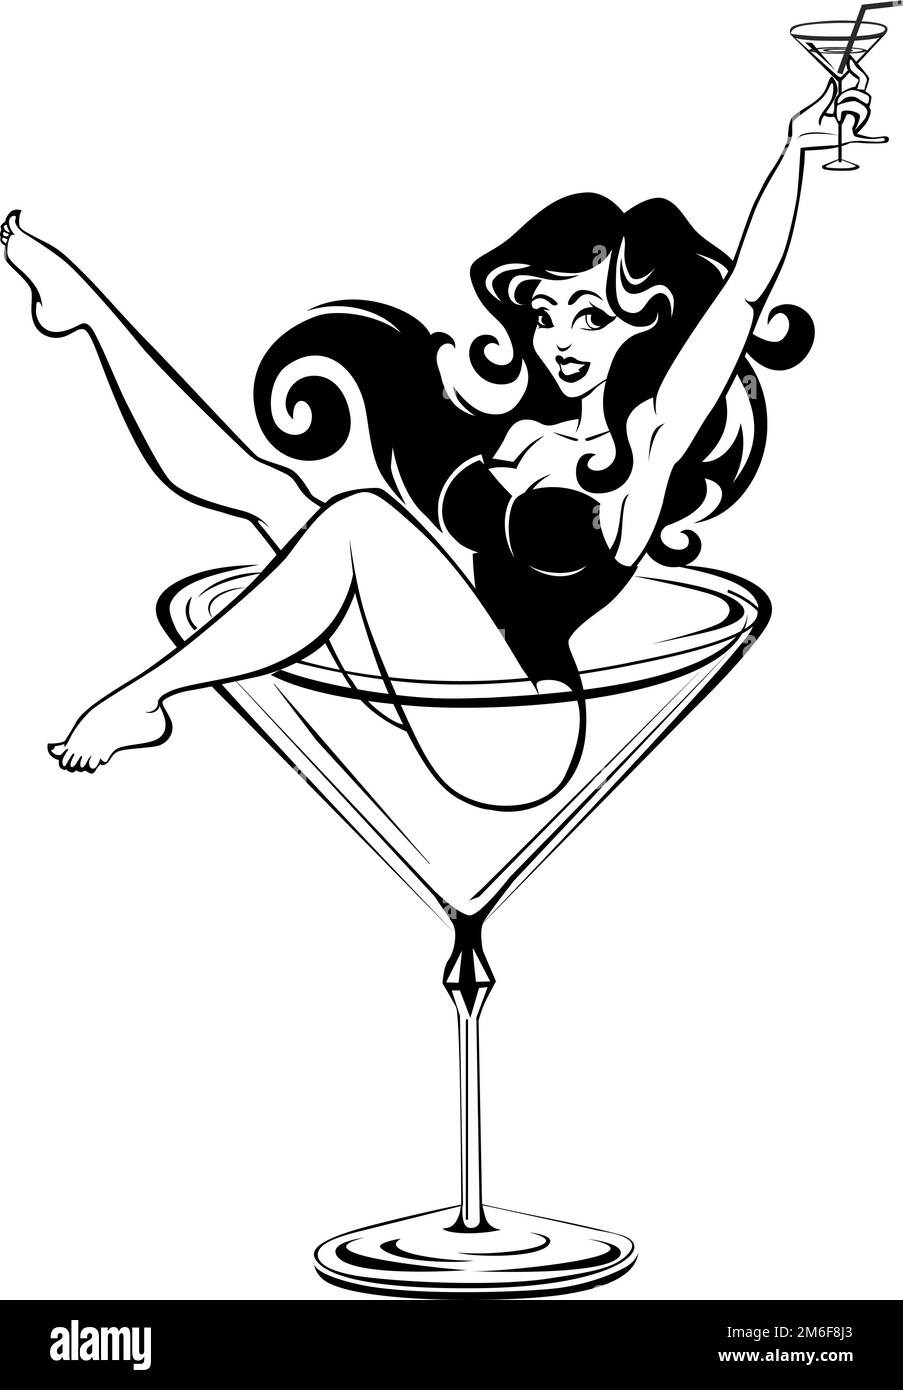 Chica de belleza cómica sentada en vaso de cóctel alto y sosteniendo el vidrio en su mano levantada. Ñartoon vector sobre fondo transparente Ilustración del Vector